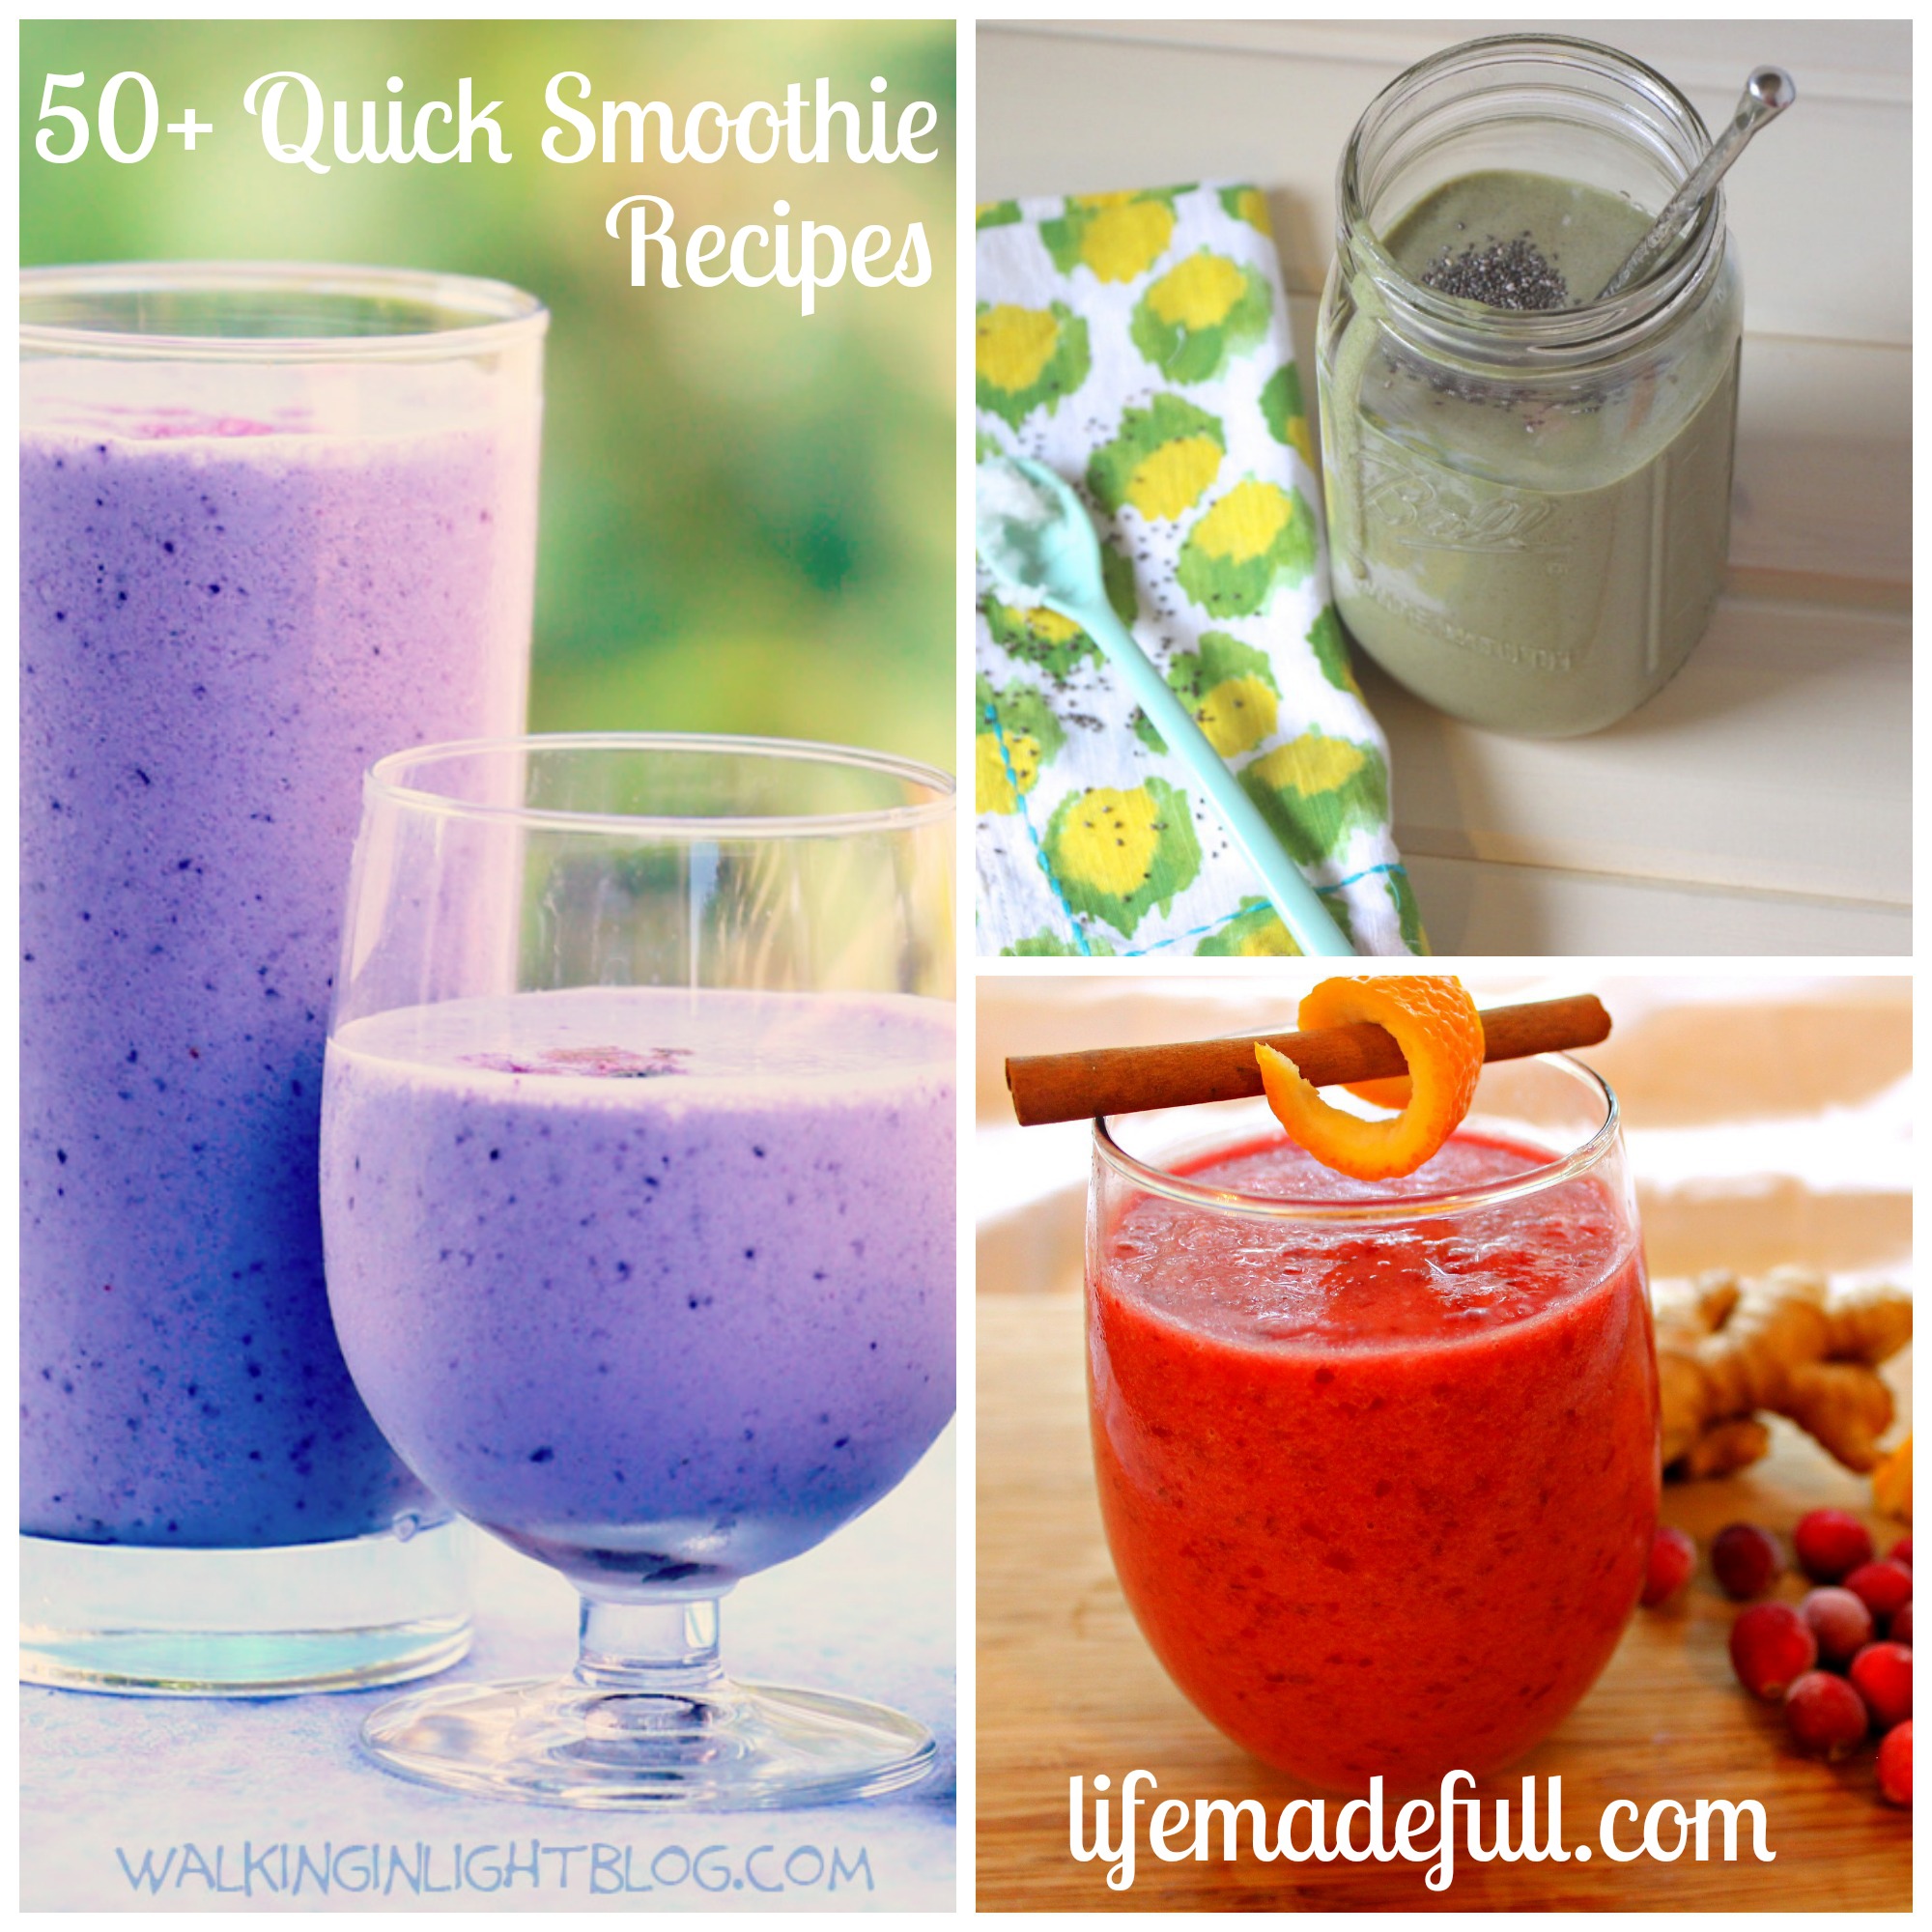 50+ Quick Smoothie Recipes